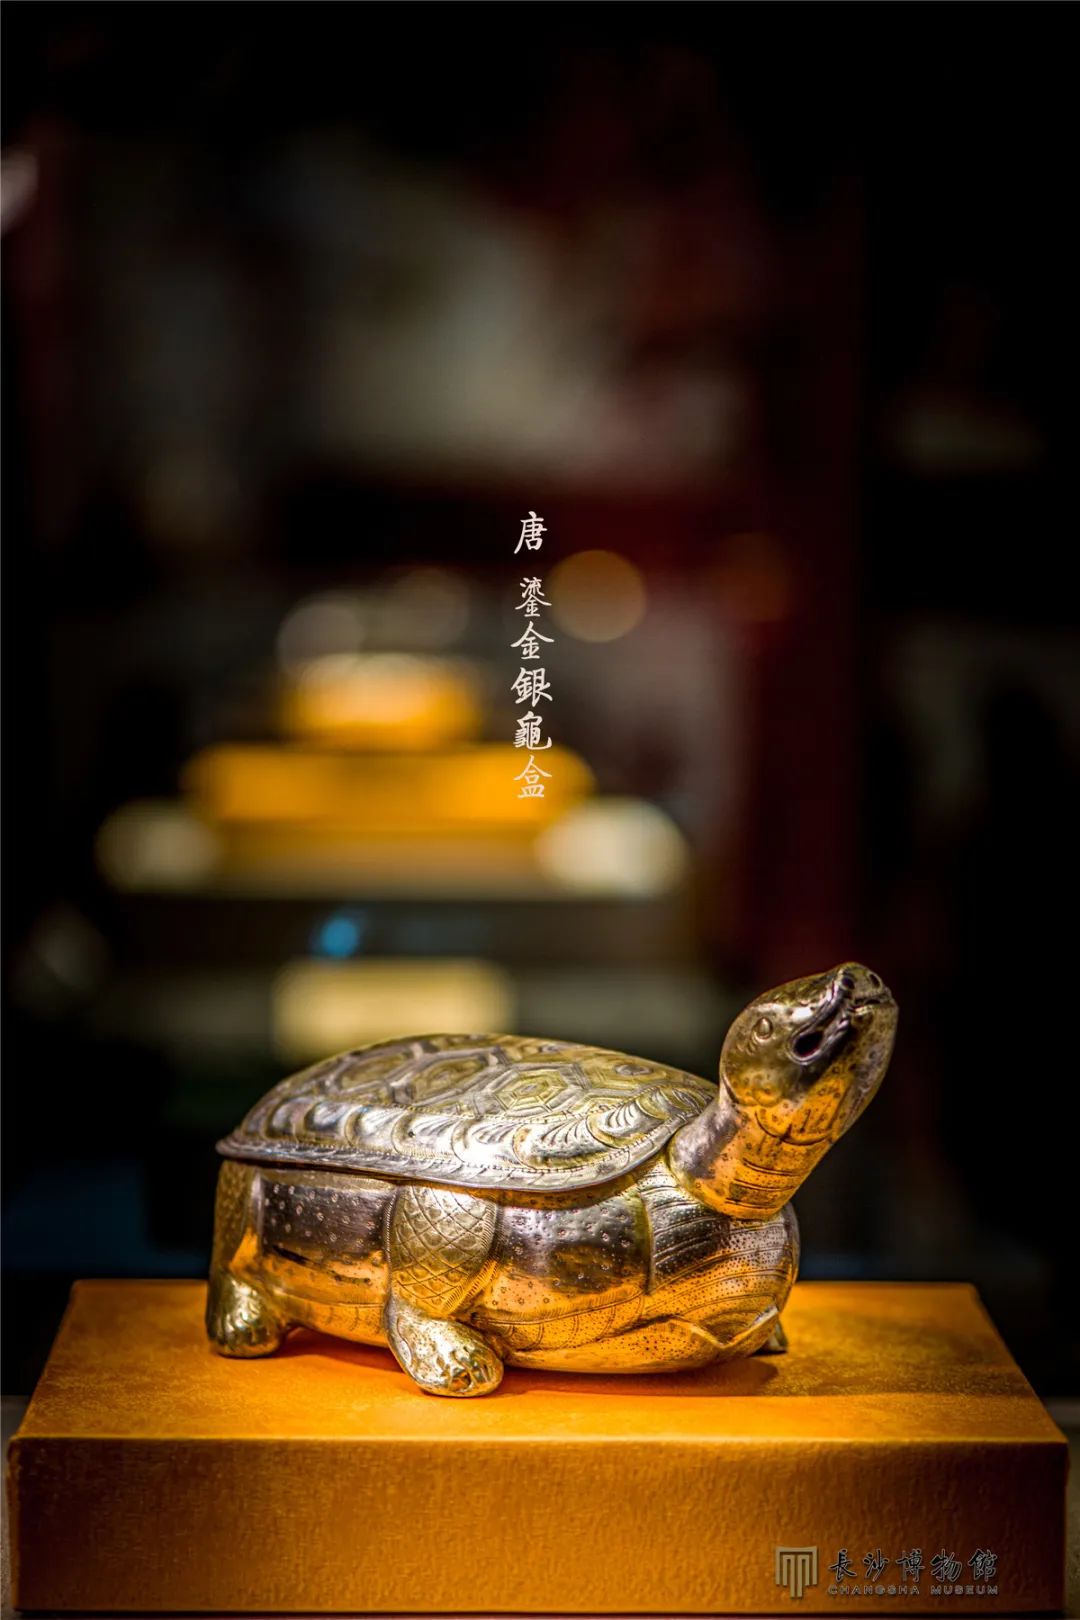 唐鎏金银龟盒 高13.1厘米，通长27.6厘米 1987年法门寺塔地宫出土 现藏法门寺博物馆